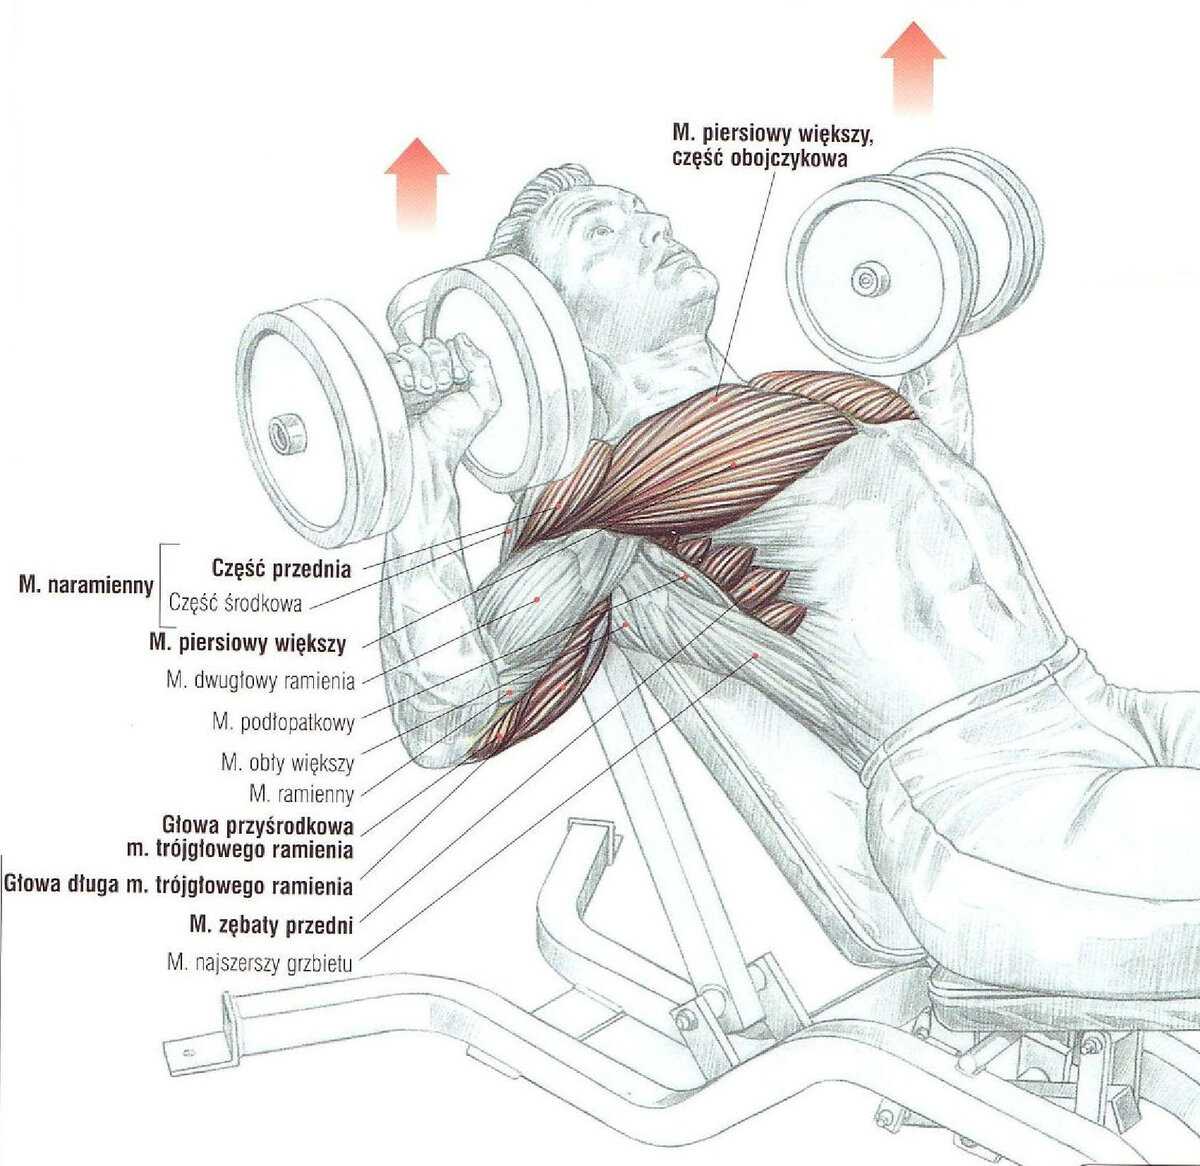 Тренировка груди - специализация, секреты правильной тренировки мышц груди, программа тренировок и анатомия мышц груди